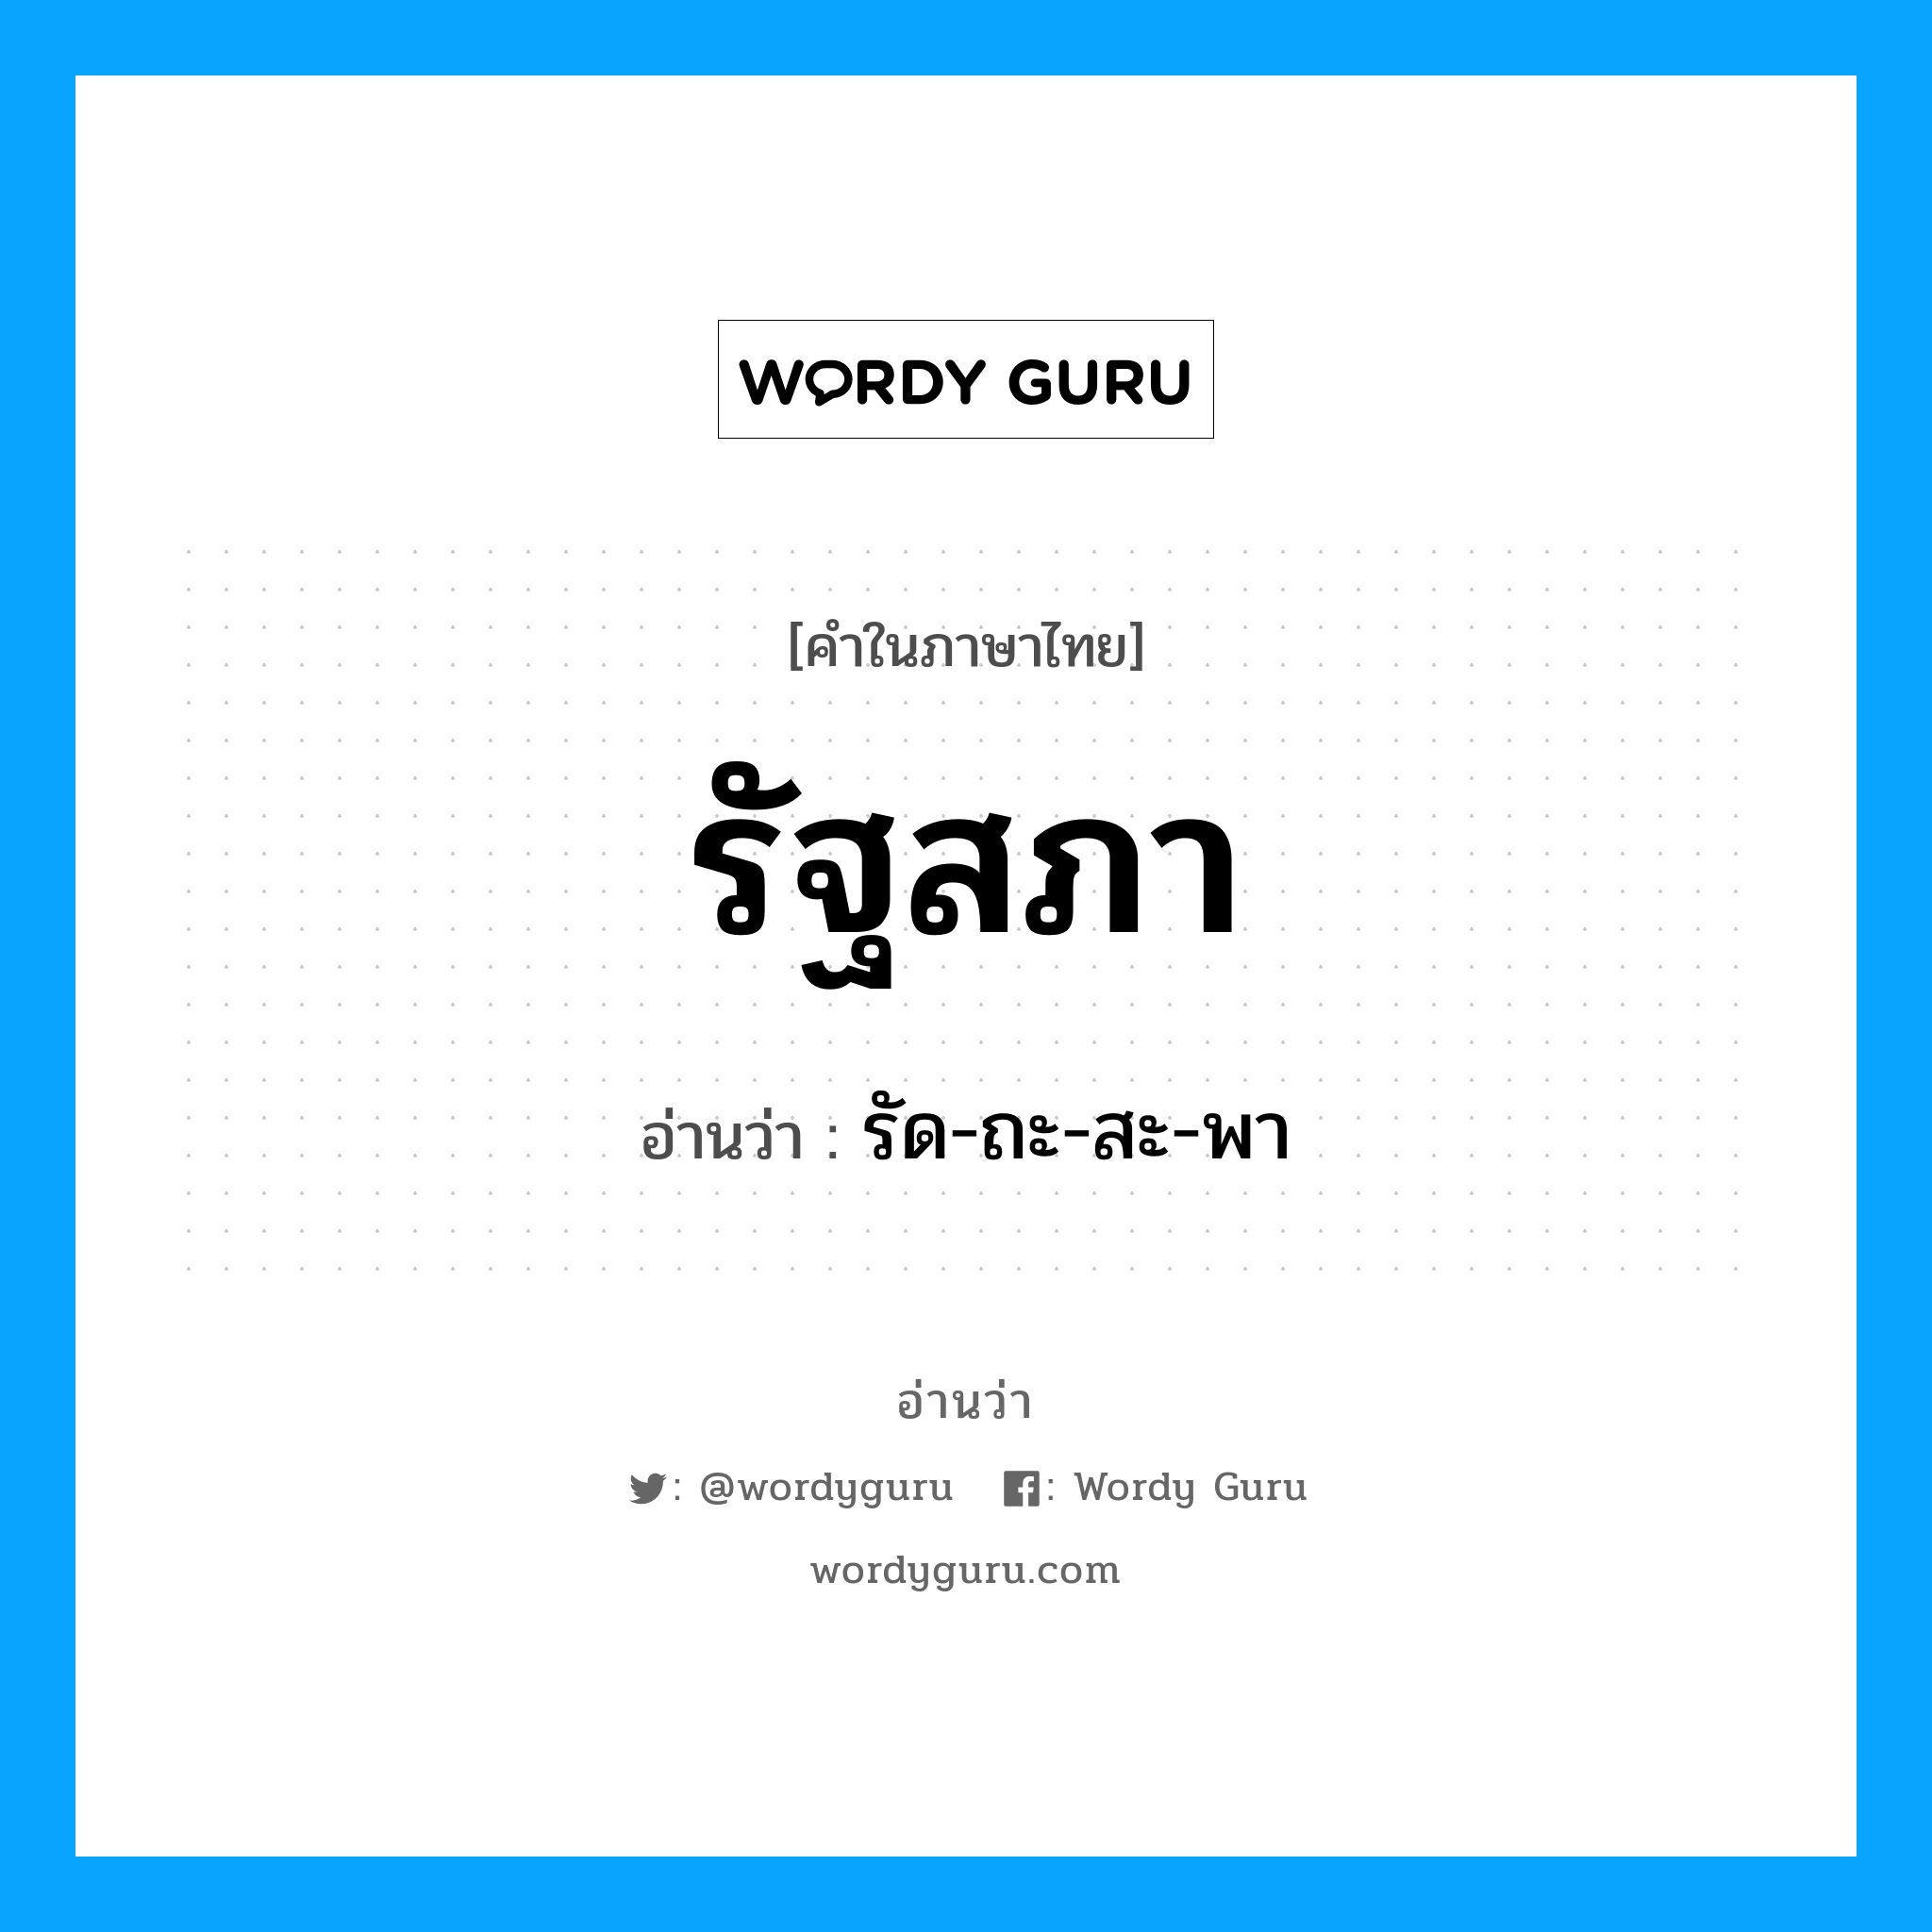 รัด-ถะ-สะ-พา เป็นคำอ่านของคำไหน?, คำในภาษาไทย รัด-ถะ-สะ-พา อ่านว่า รัฐสภา